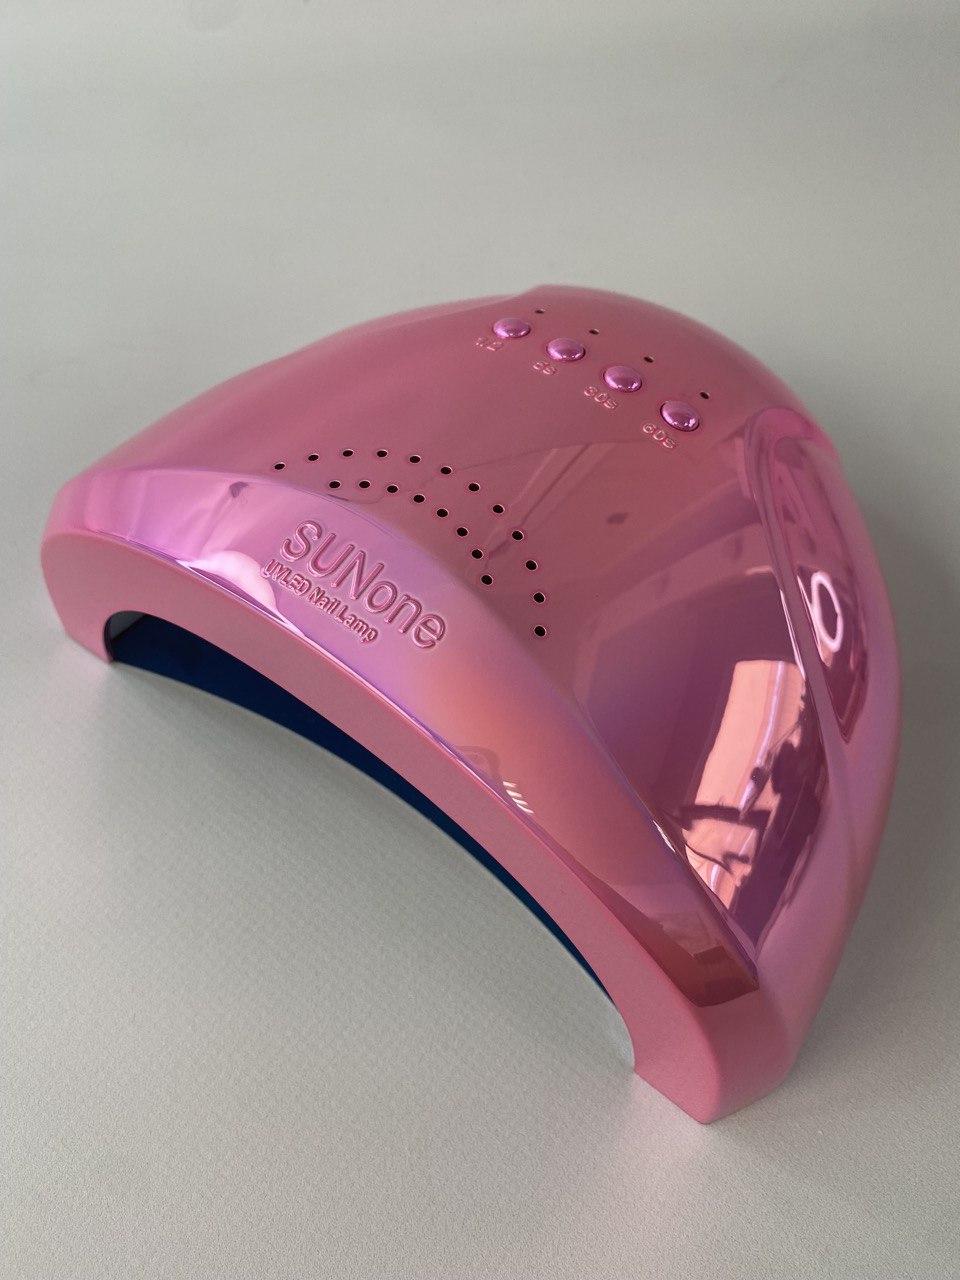 Професійна UV/LED лампа SUNone Platinum для манікюру і педикюру, 48 Вт.Pink